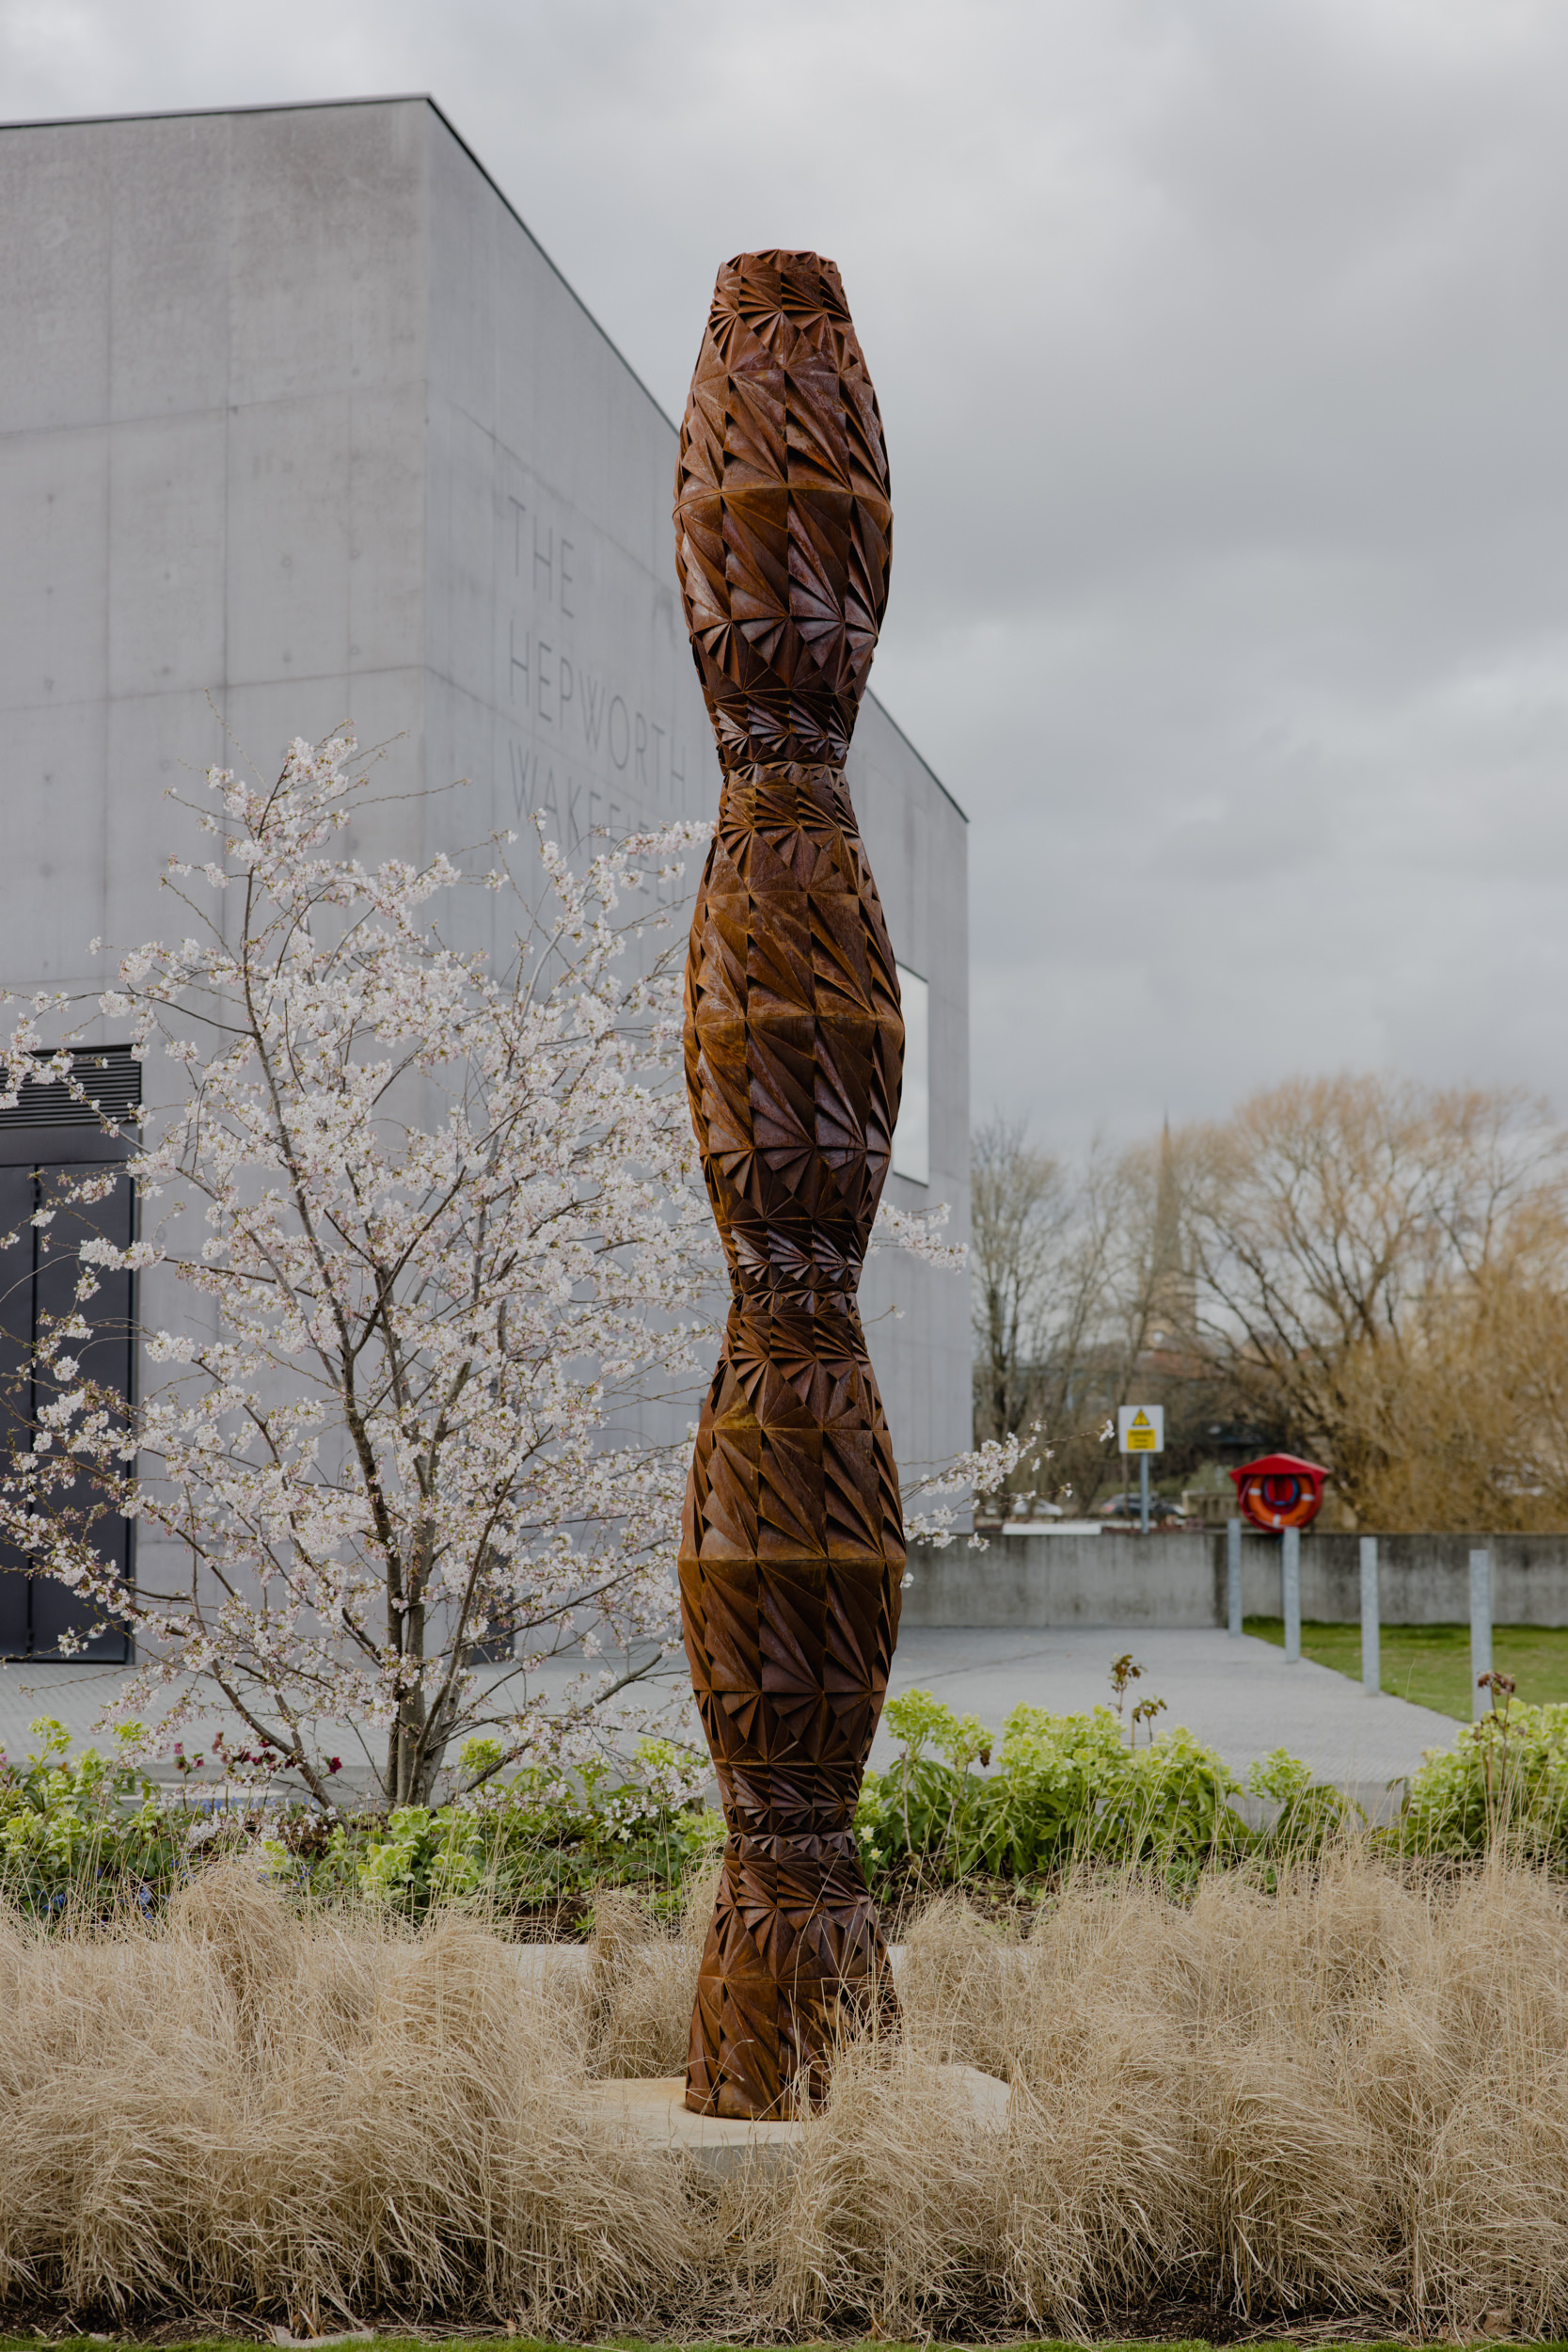 A tall thin bronze sculpture in a garden